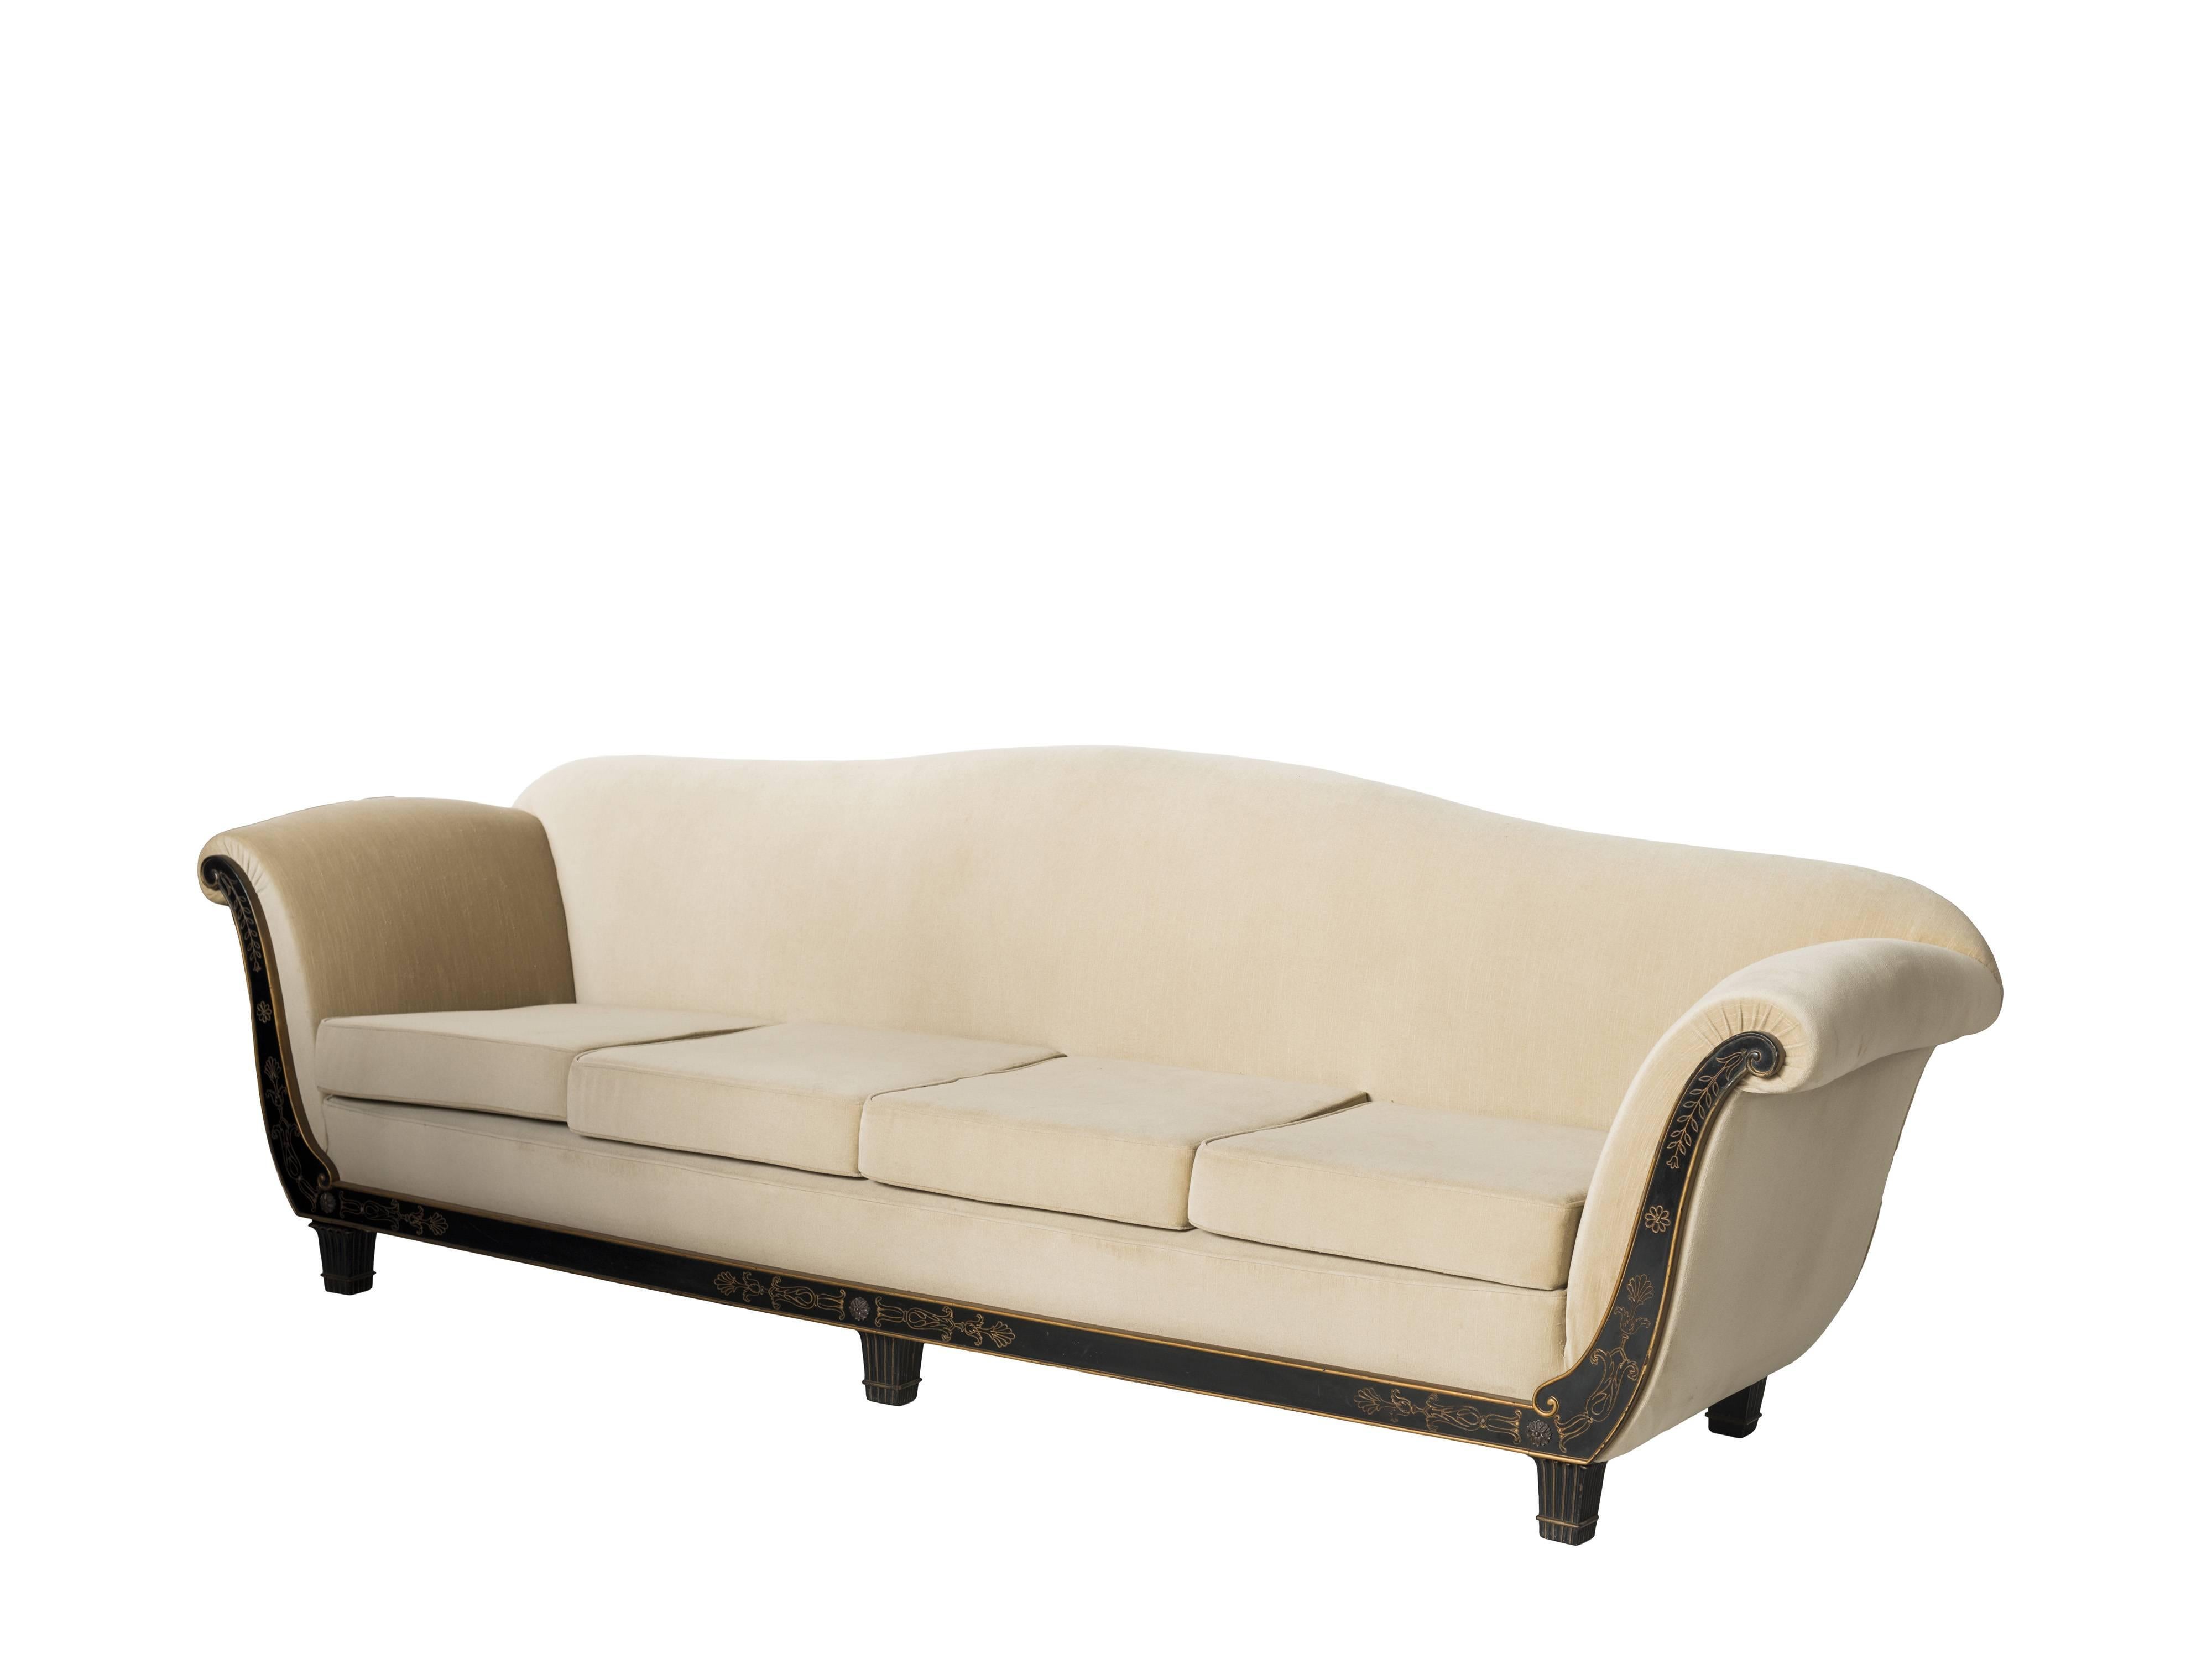 Salvatore Dinucci Brasilianisches Sofa der Jahrhundertmitte mit Samtpolsterung, 1950er Jahre
 
Der Öffentlichkeit kaum bekannt, war Dinucci, wie die Signatur auf seinen Möbeln besagt, ein bedeutender Hersteller moderner brasilianischer Möbel